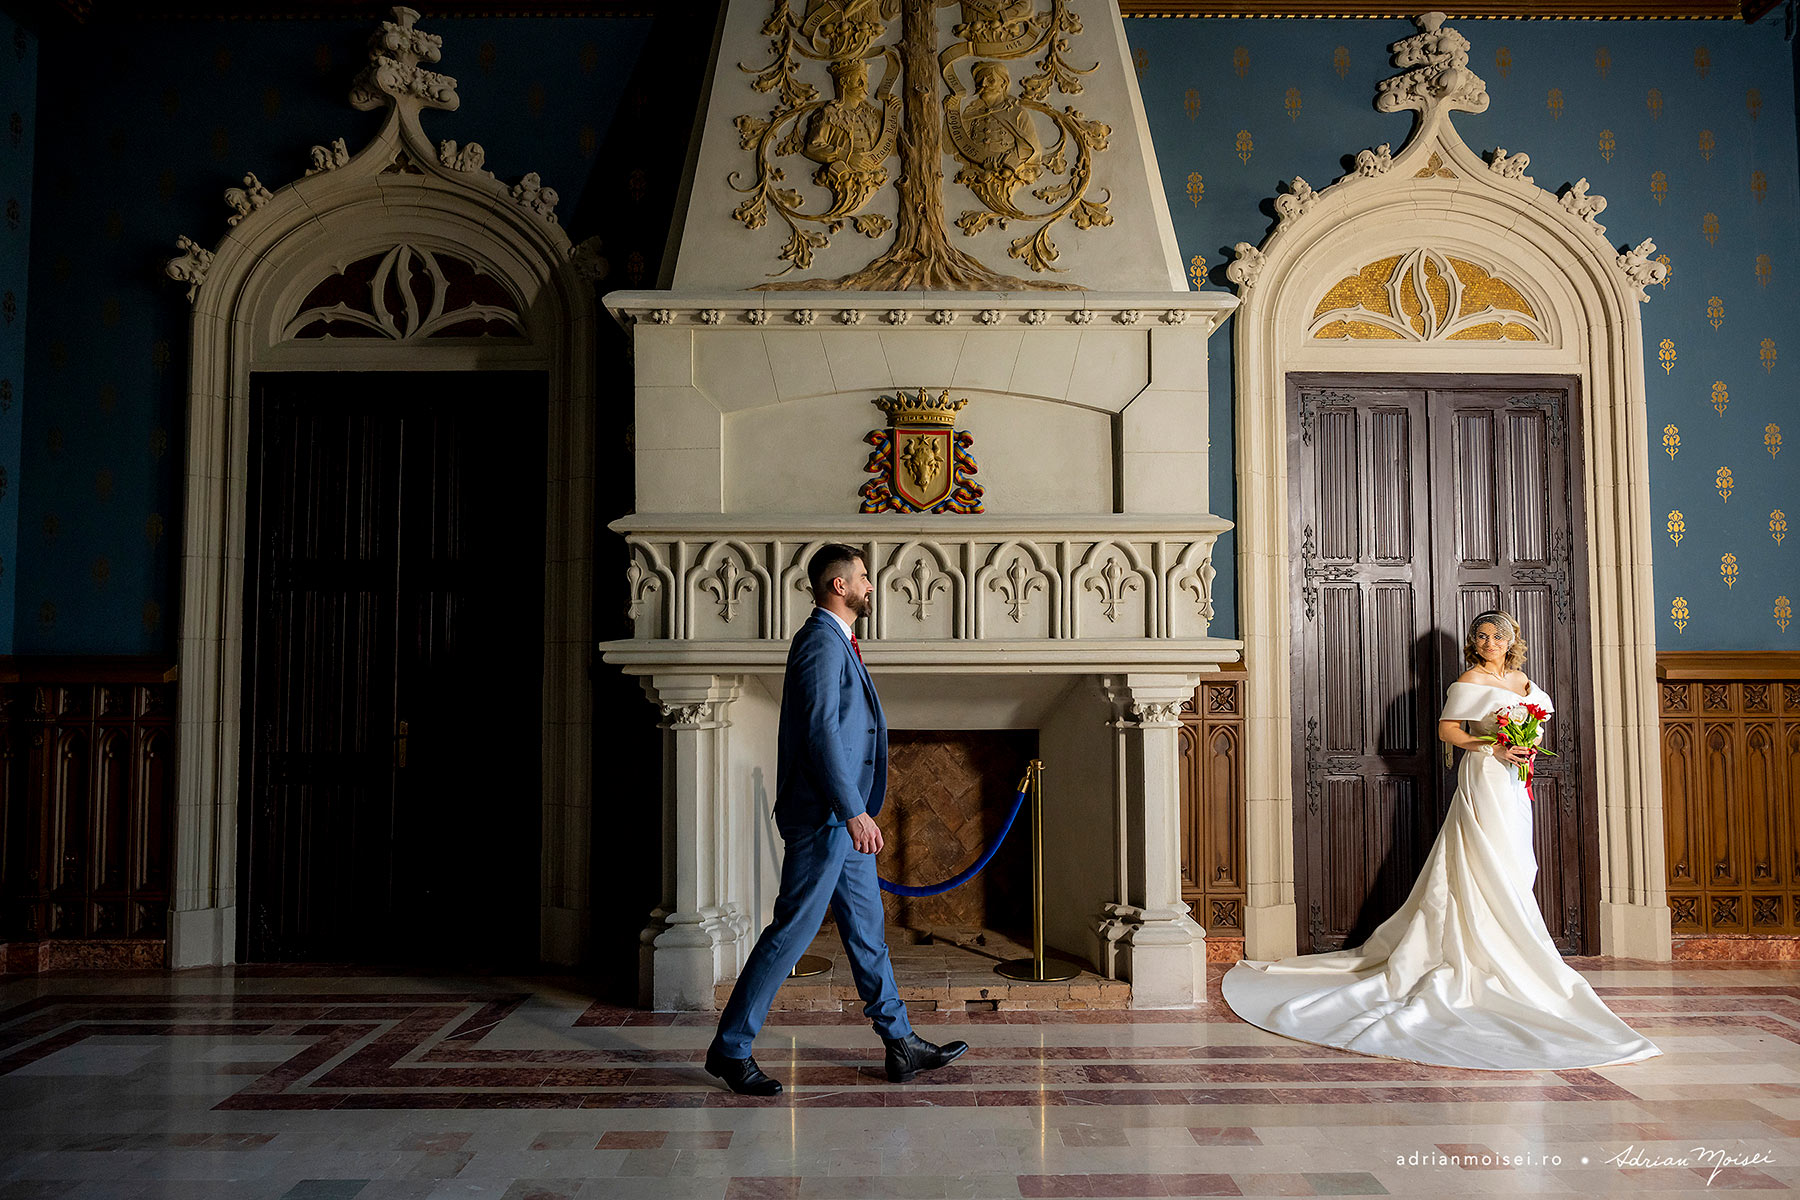 O poză de nuntă memorabilă, realizată în Sala Voievozilor din Iași - Adrian Moisei, fotograf Iasi /></p>
<p><img src=